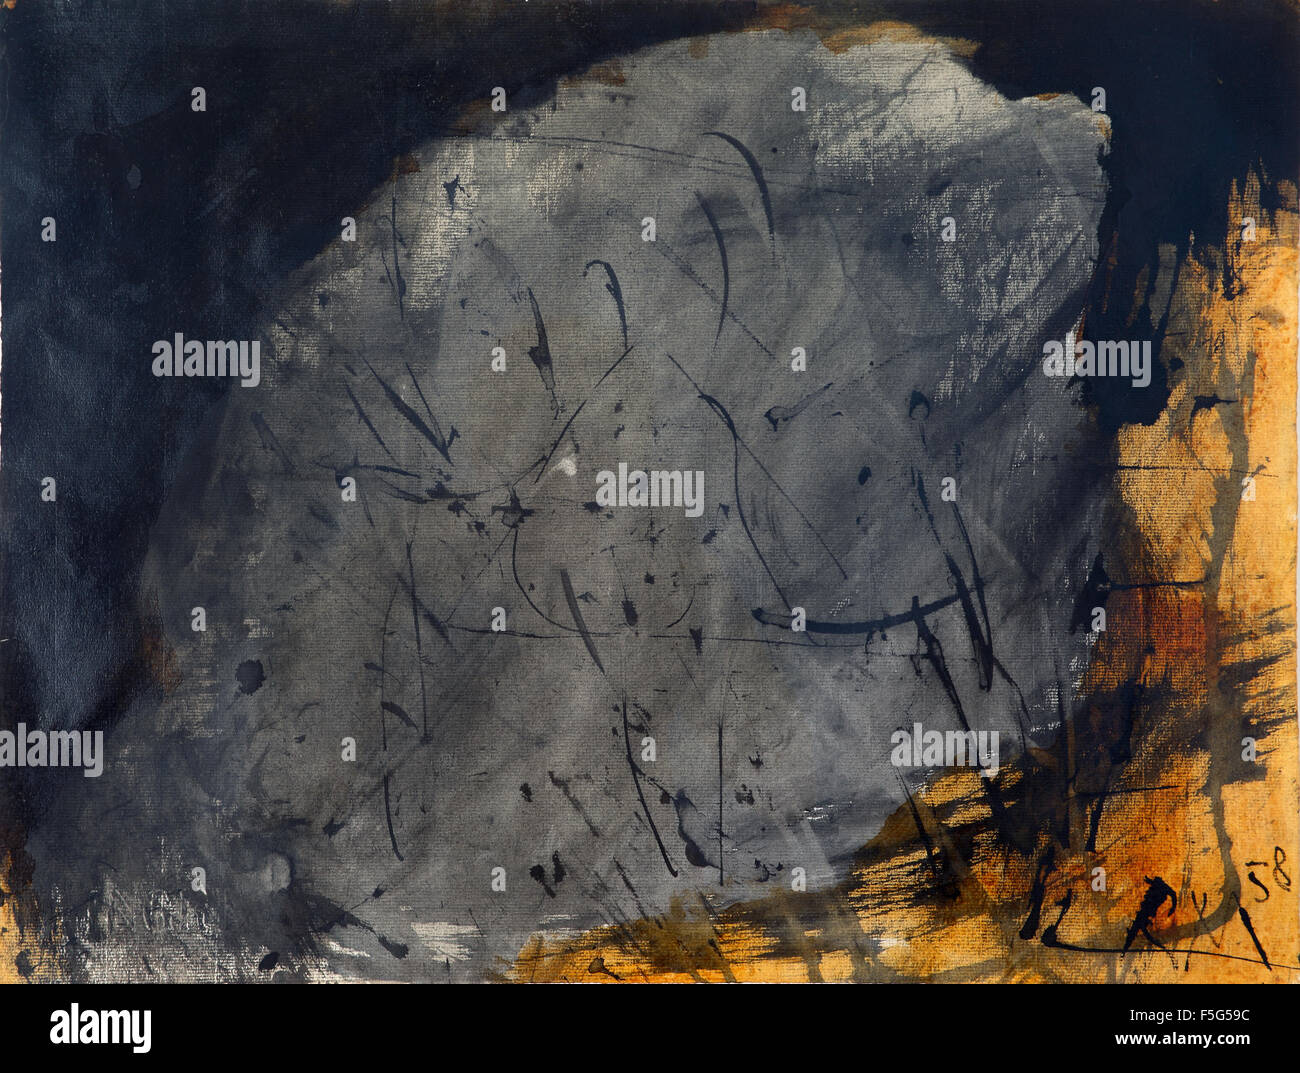 Le Rocher, 1958 (l'encre et la gomme laque sur papier ingres) par Robert Motherwell, artiste américain (1915-1991) Banque D'Images